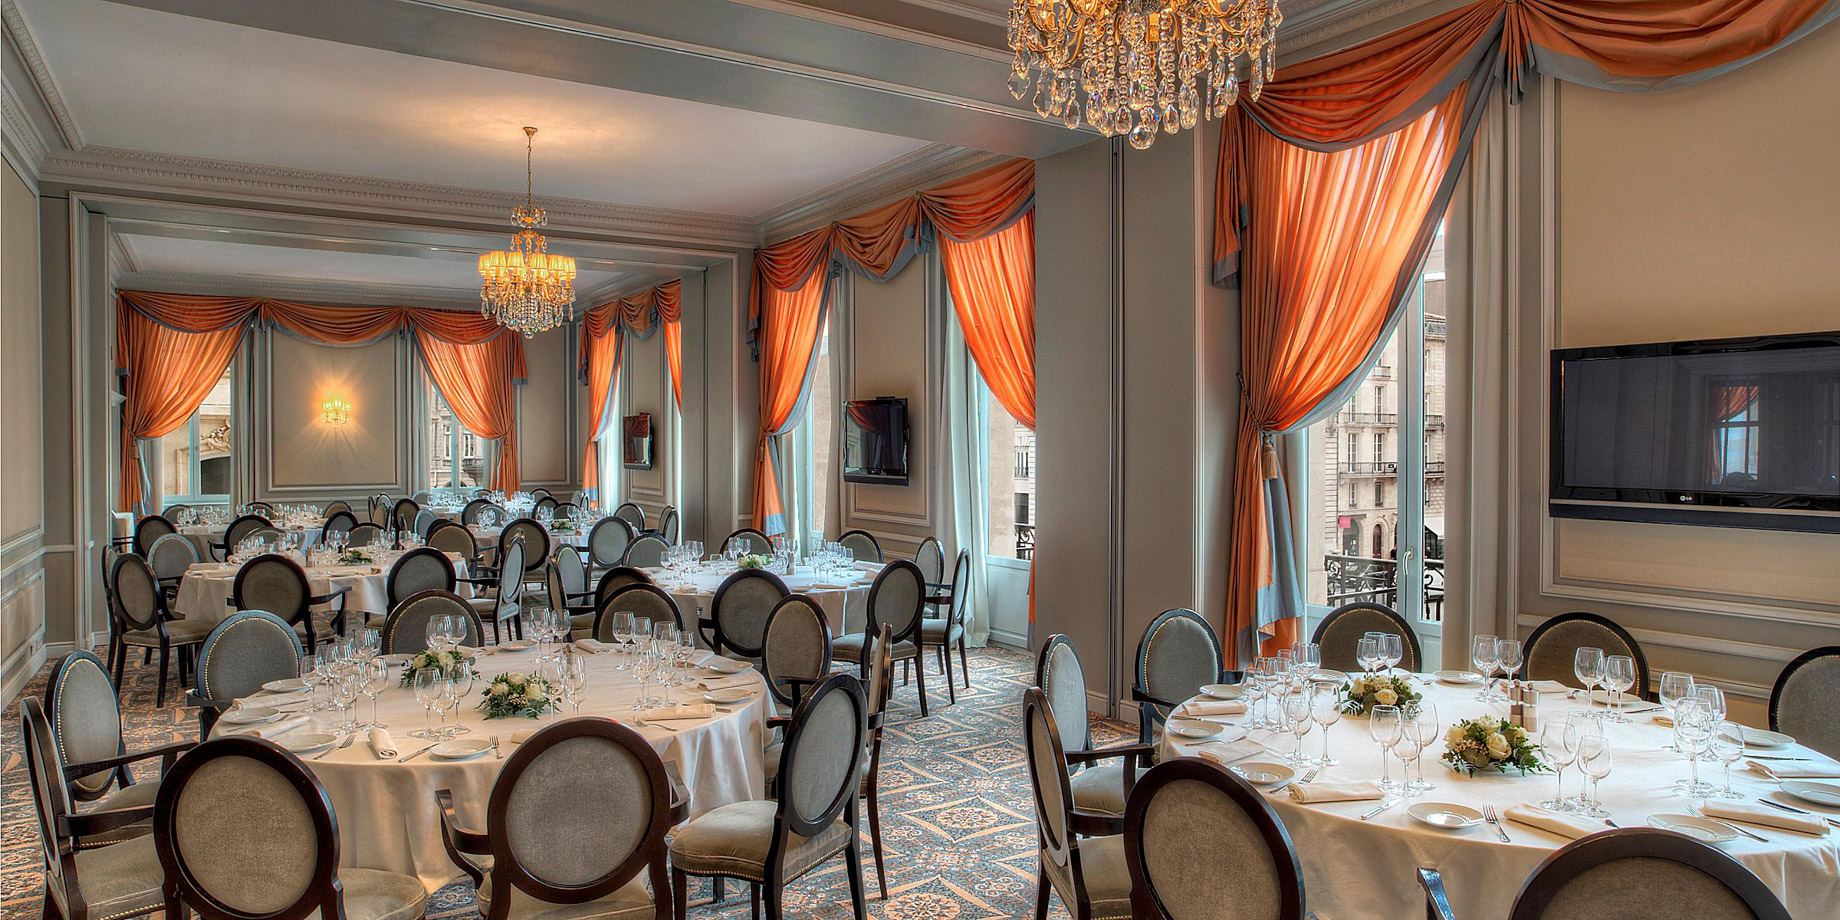 InterContinental Bordeaux Le Grand Hotel – Bordeaux, France – Saint-Emilion Banquet Room